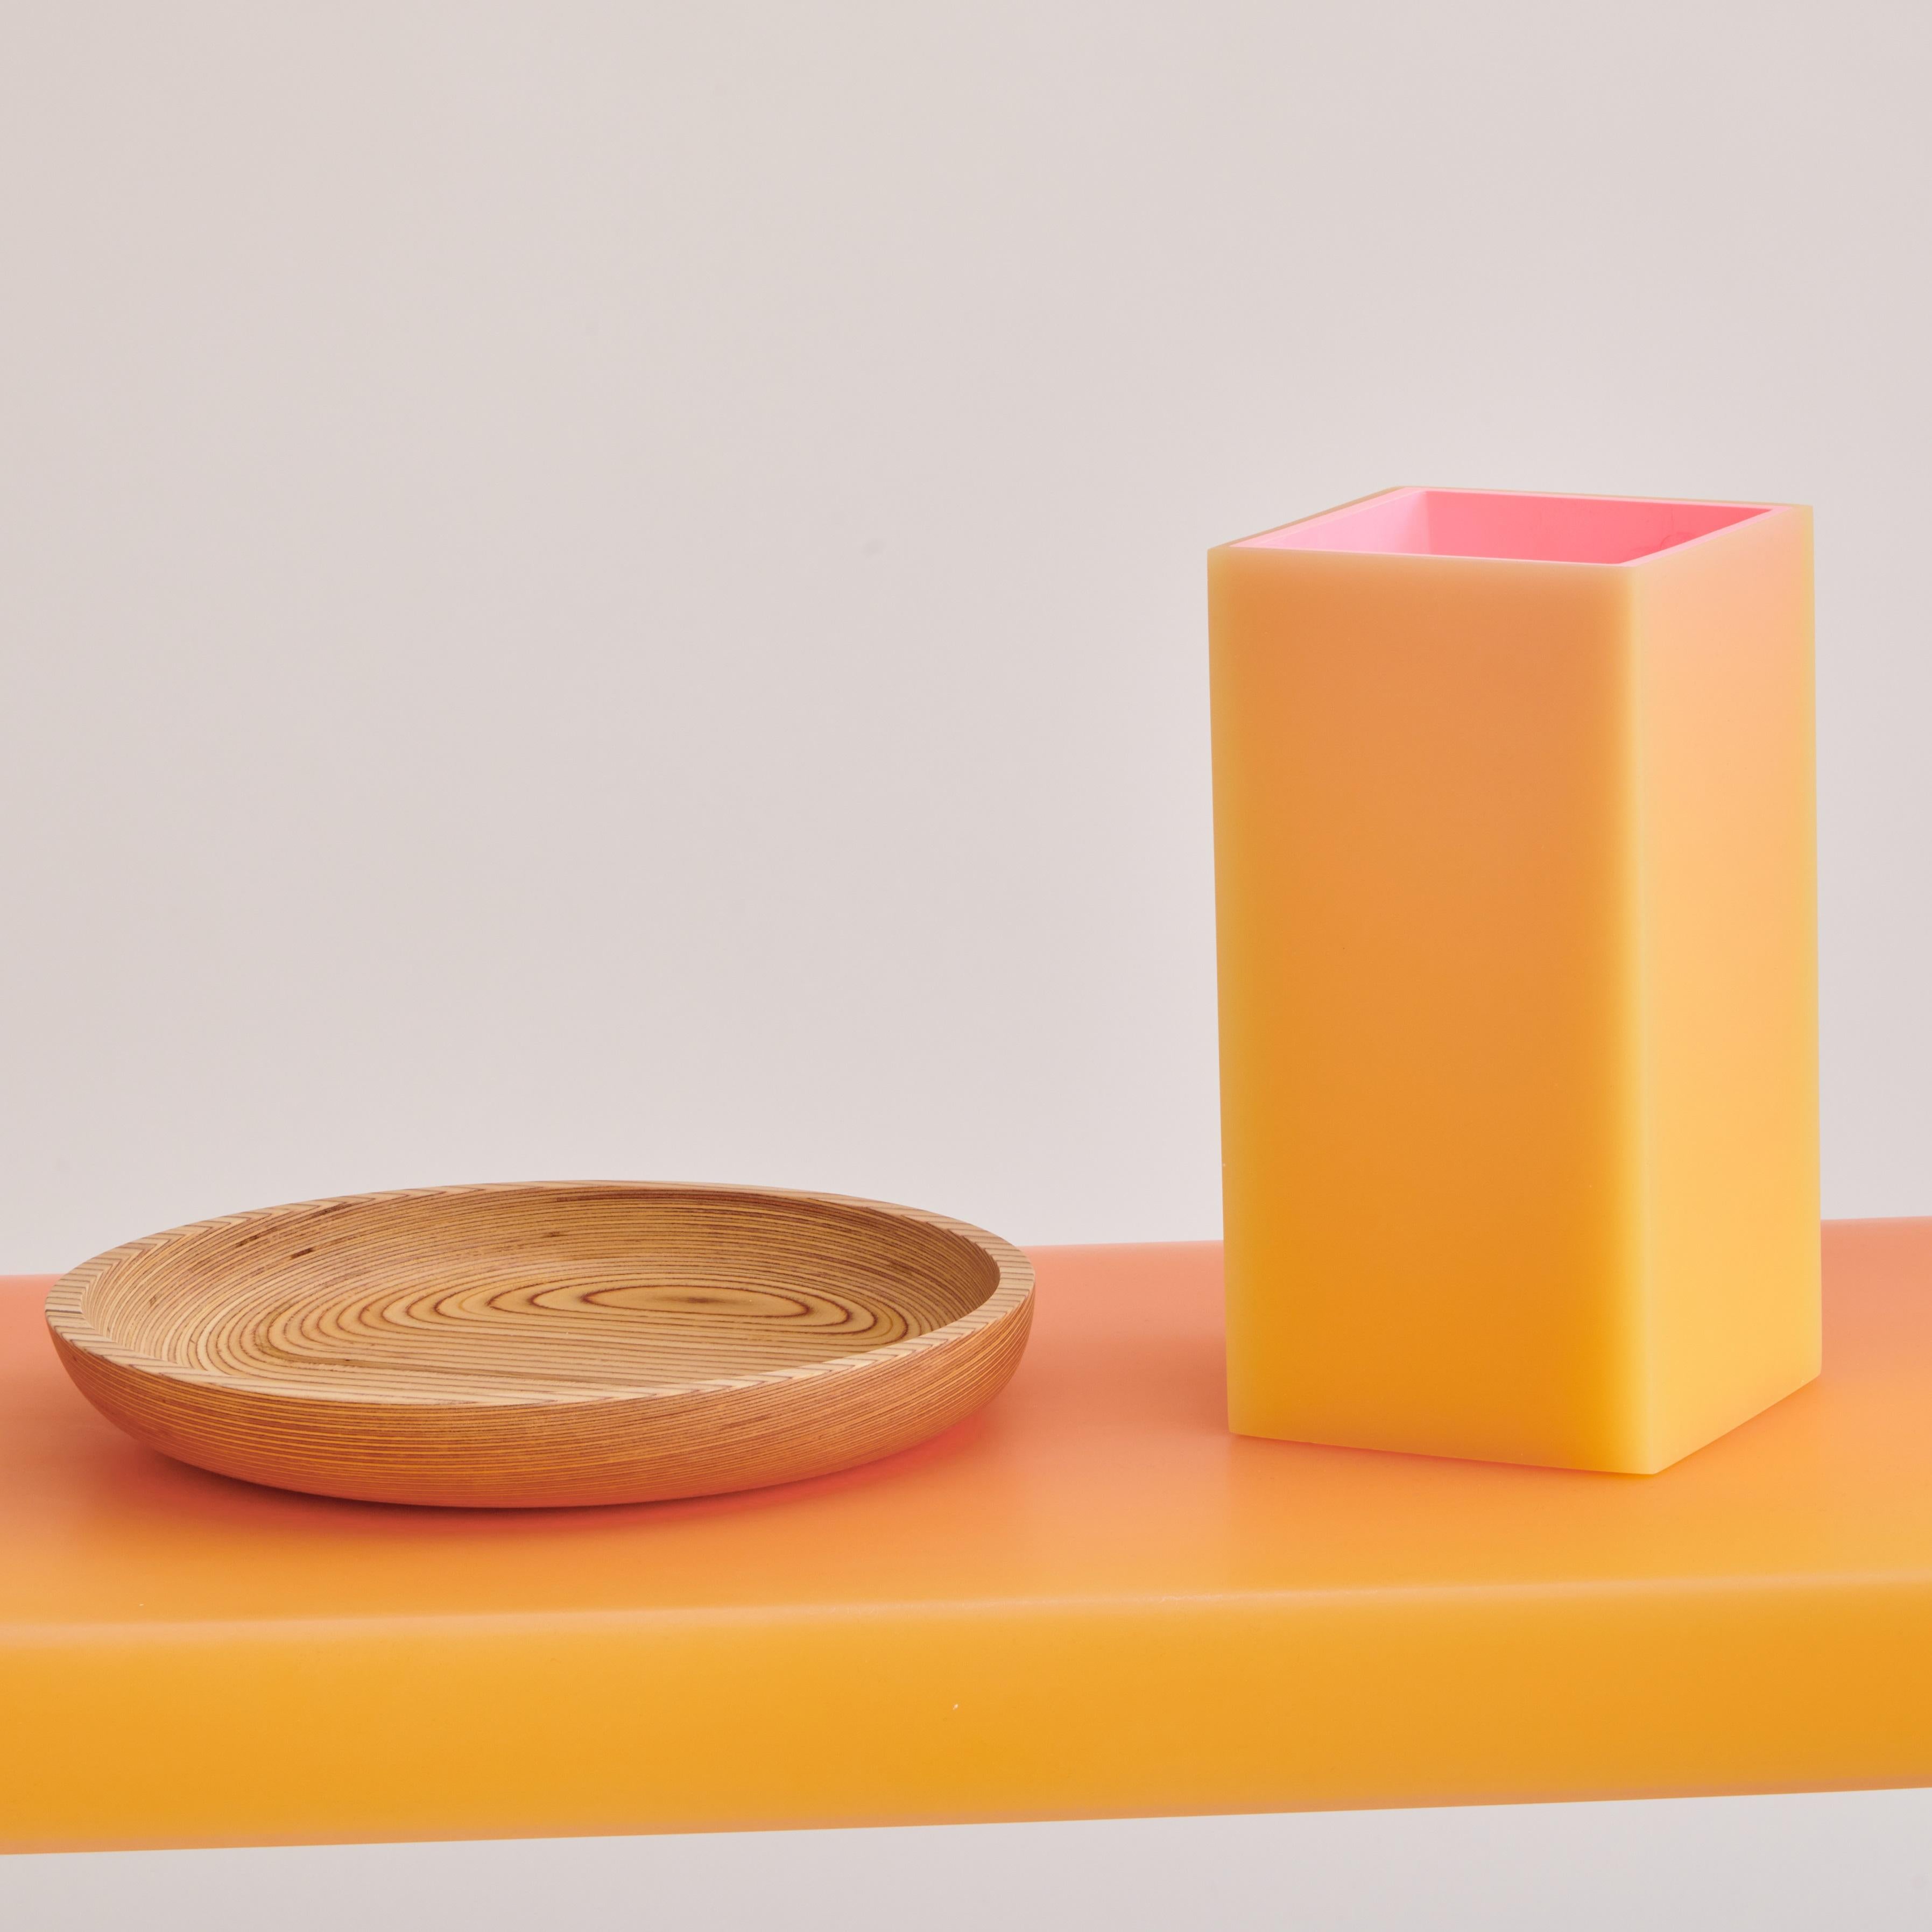 Quadratische Vase aus Harz in Orange und Gelb. Mit einem leuchtenden Äußeren, dessen Farben sich im pfirsichfarbenen Farbspektrum mischen, und einem rosafarbenen Inneren darunter.